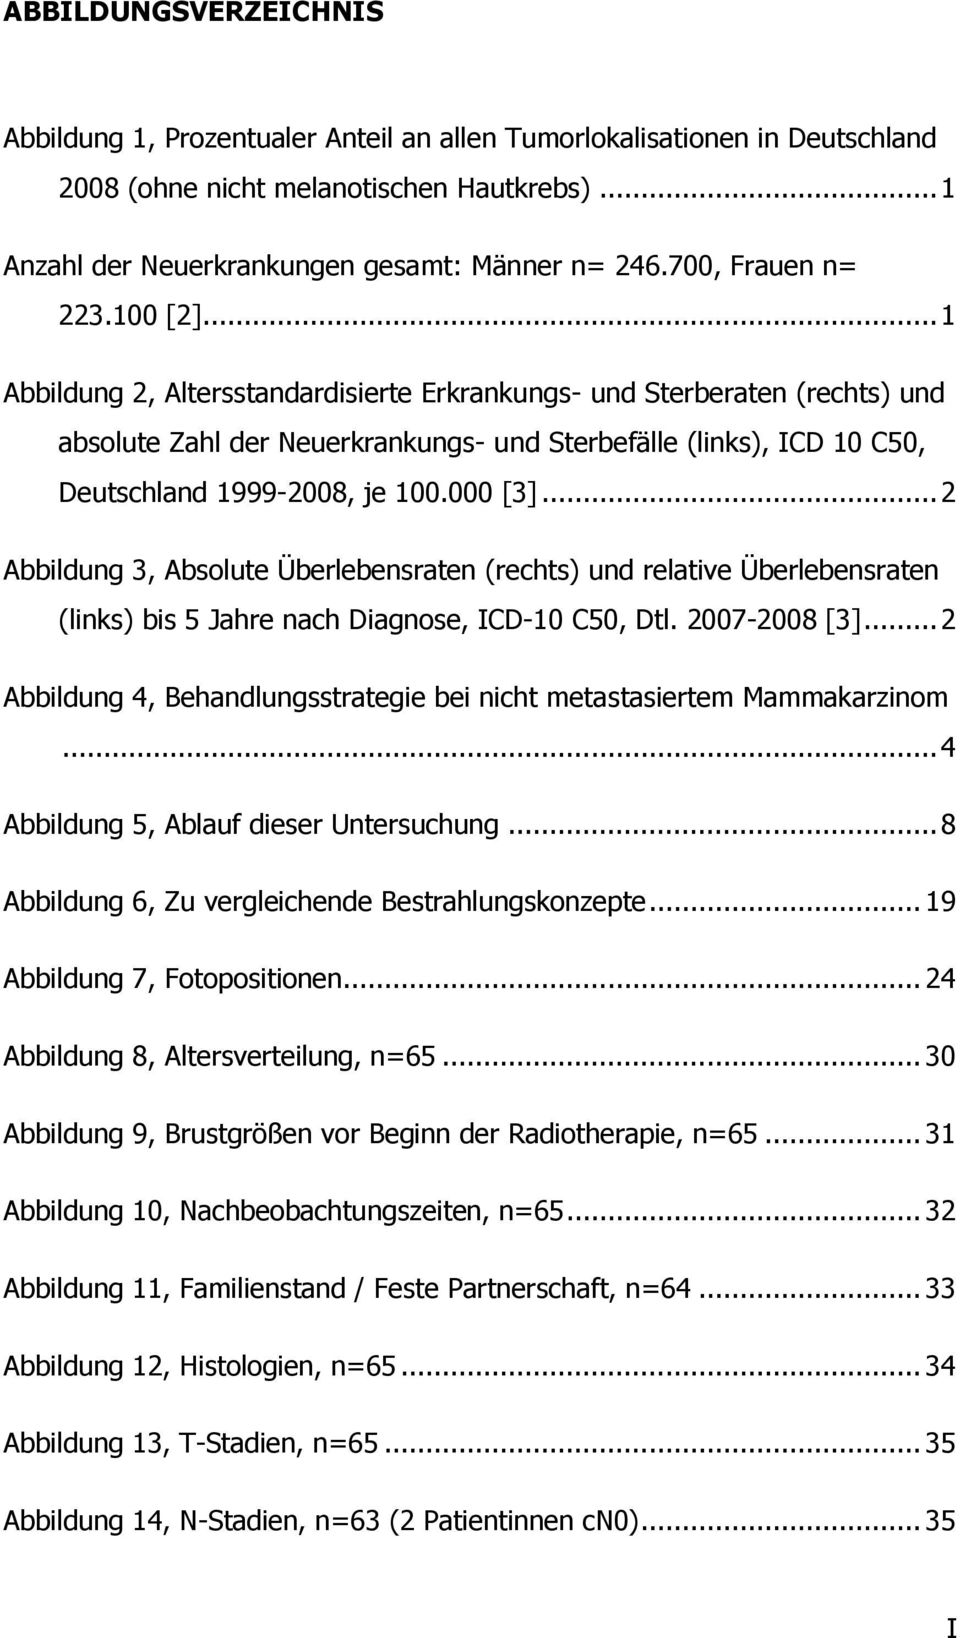 .. 1 Abbildung 2, Altersstandardisierte Erkrankungs- und Sterberaten (rechts) und absolute Zahl der Neuerkrankungs- und Sterbefälle (links), ICD 10 C50, Deutschland 1999-2008, je 100.000 [3].